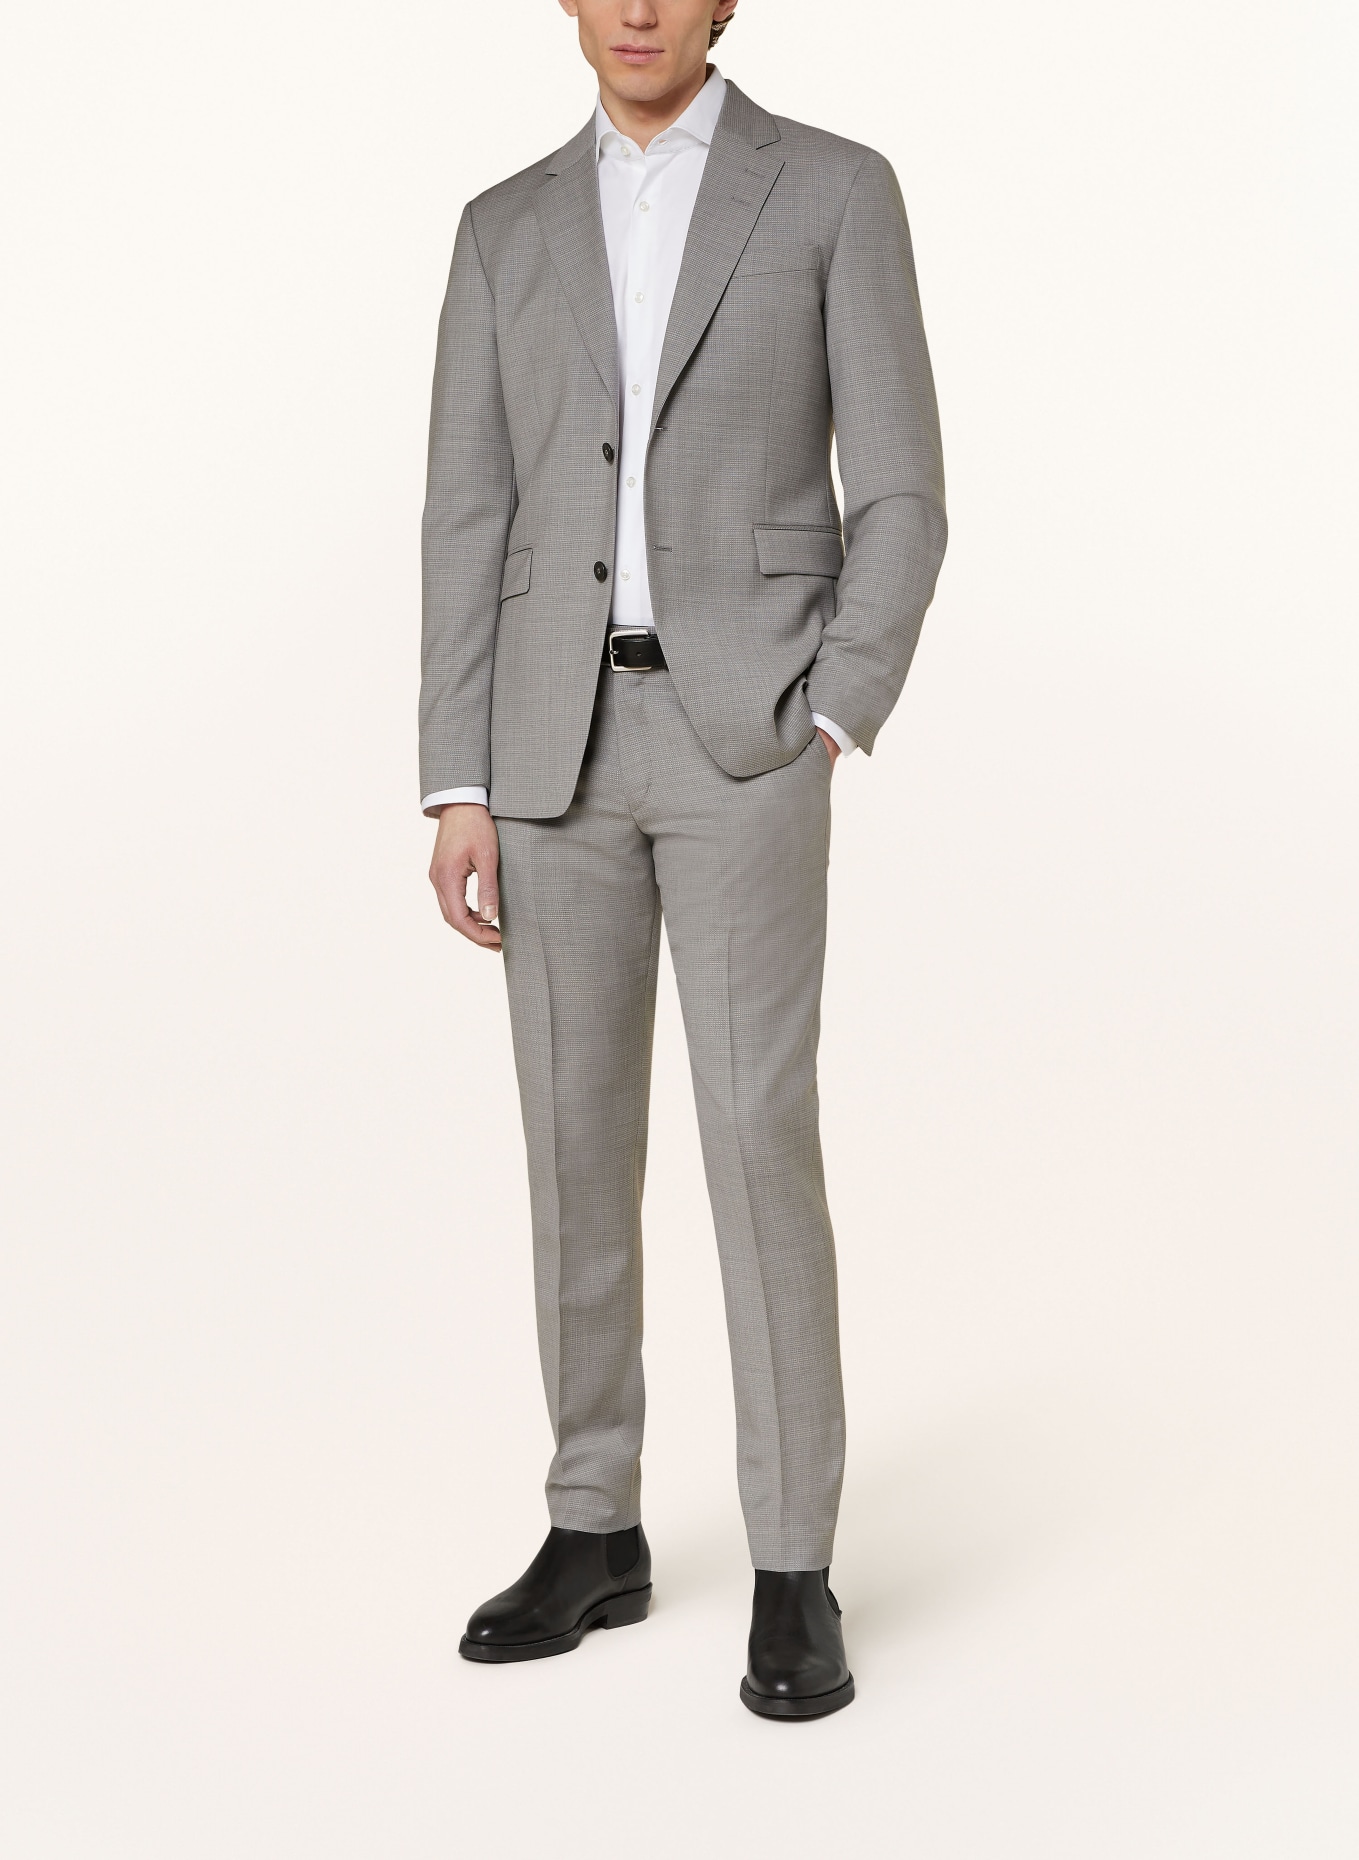 TIGER OF SWEDEN Suit trousers TENUTA slim fit, Color: M04 Light Grey Melange (Image 2)